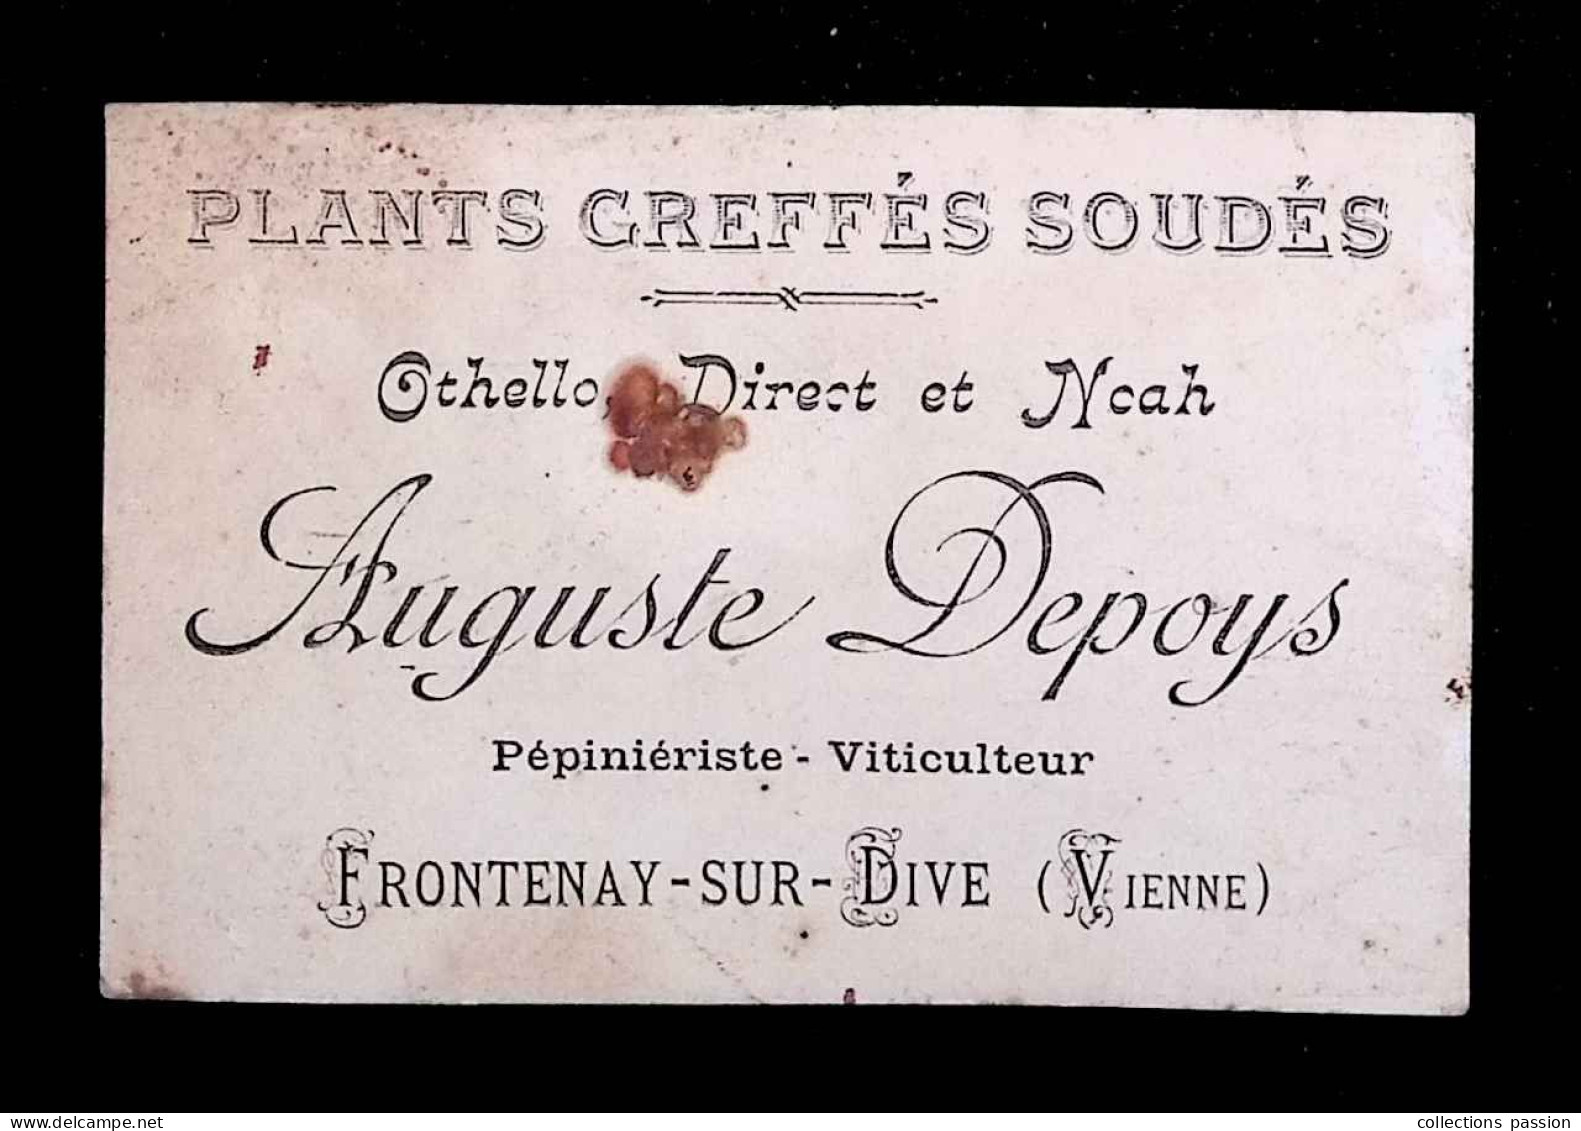 Carte De Visite, Plants Greffés Soudés, Auguste Depoys, Pépinièriste , Viticulteur, 86, Vienne, Frontenay Sur Dive - Visitenkarten